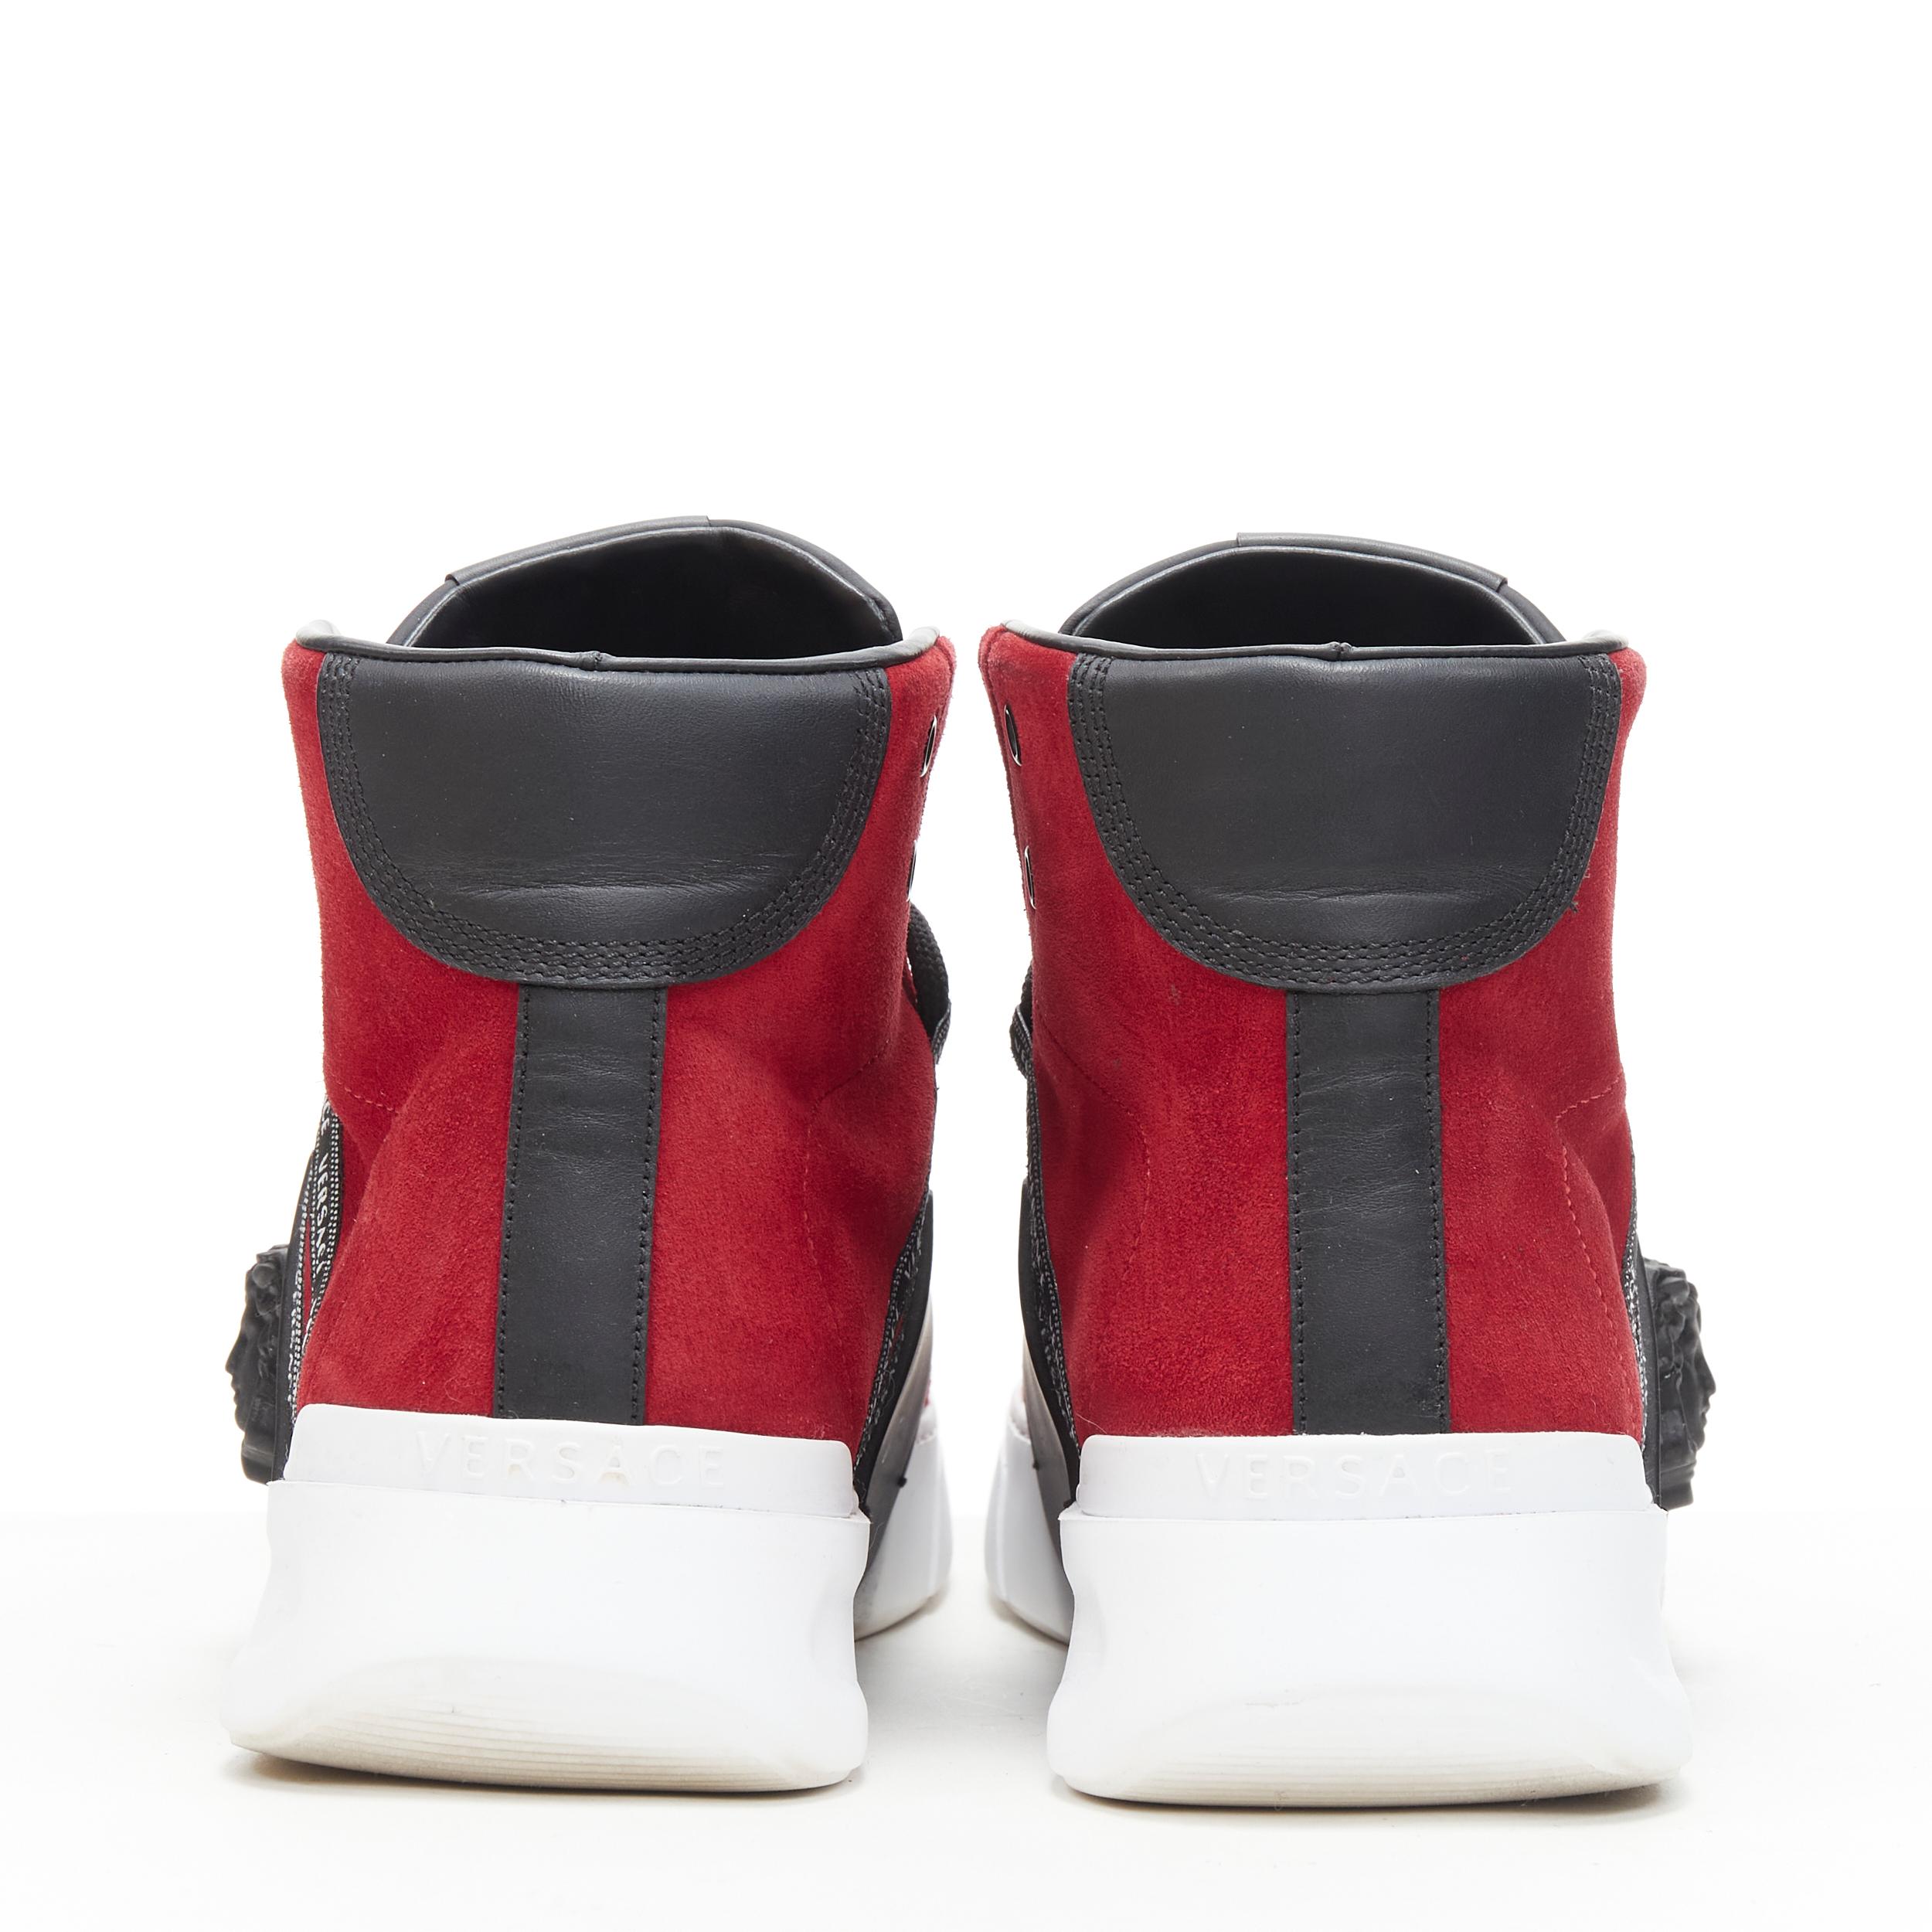 red versace sneakers